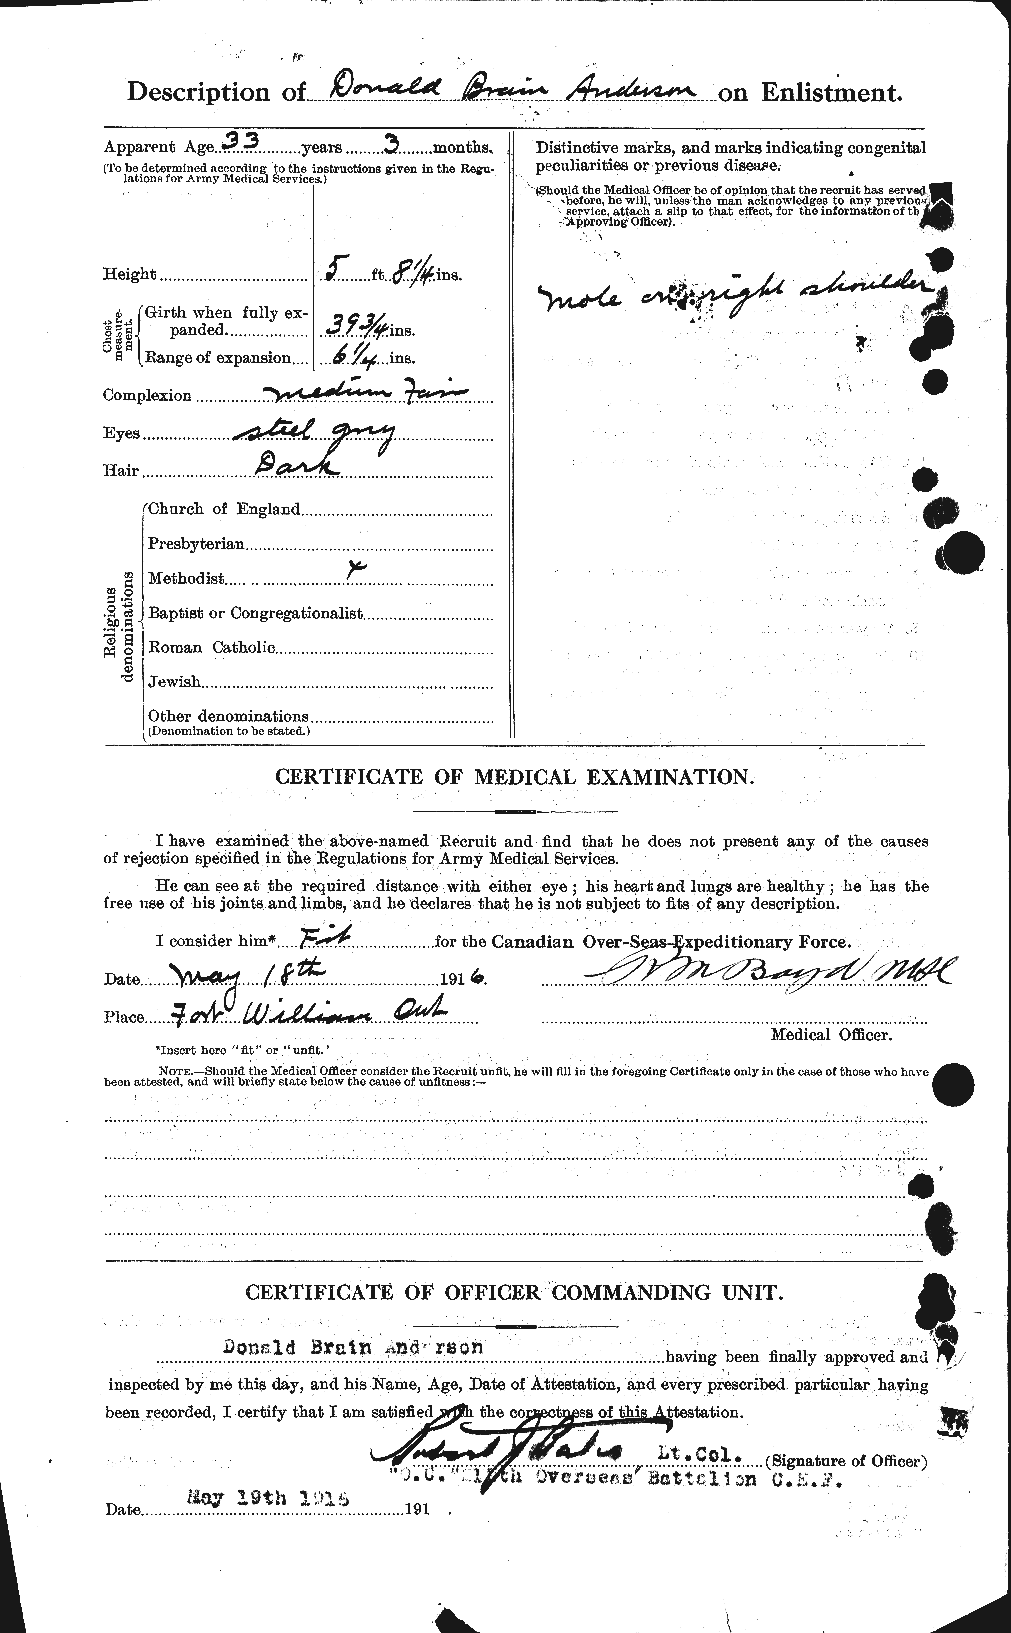 Dossiers du Personnel de la Première Guerre mondiale - CEC 209987b